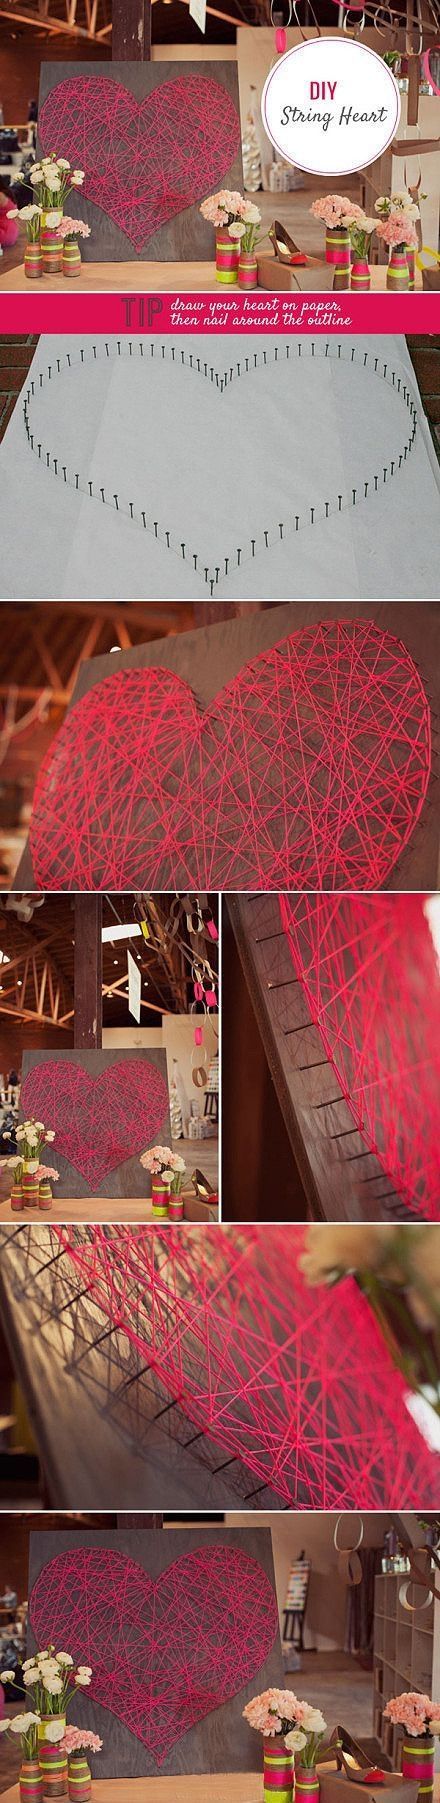 DIY String Heart diy craft crafts craft ideas diy ideas crafty diy decor diy hom